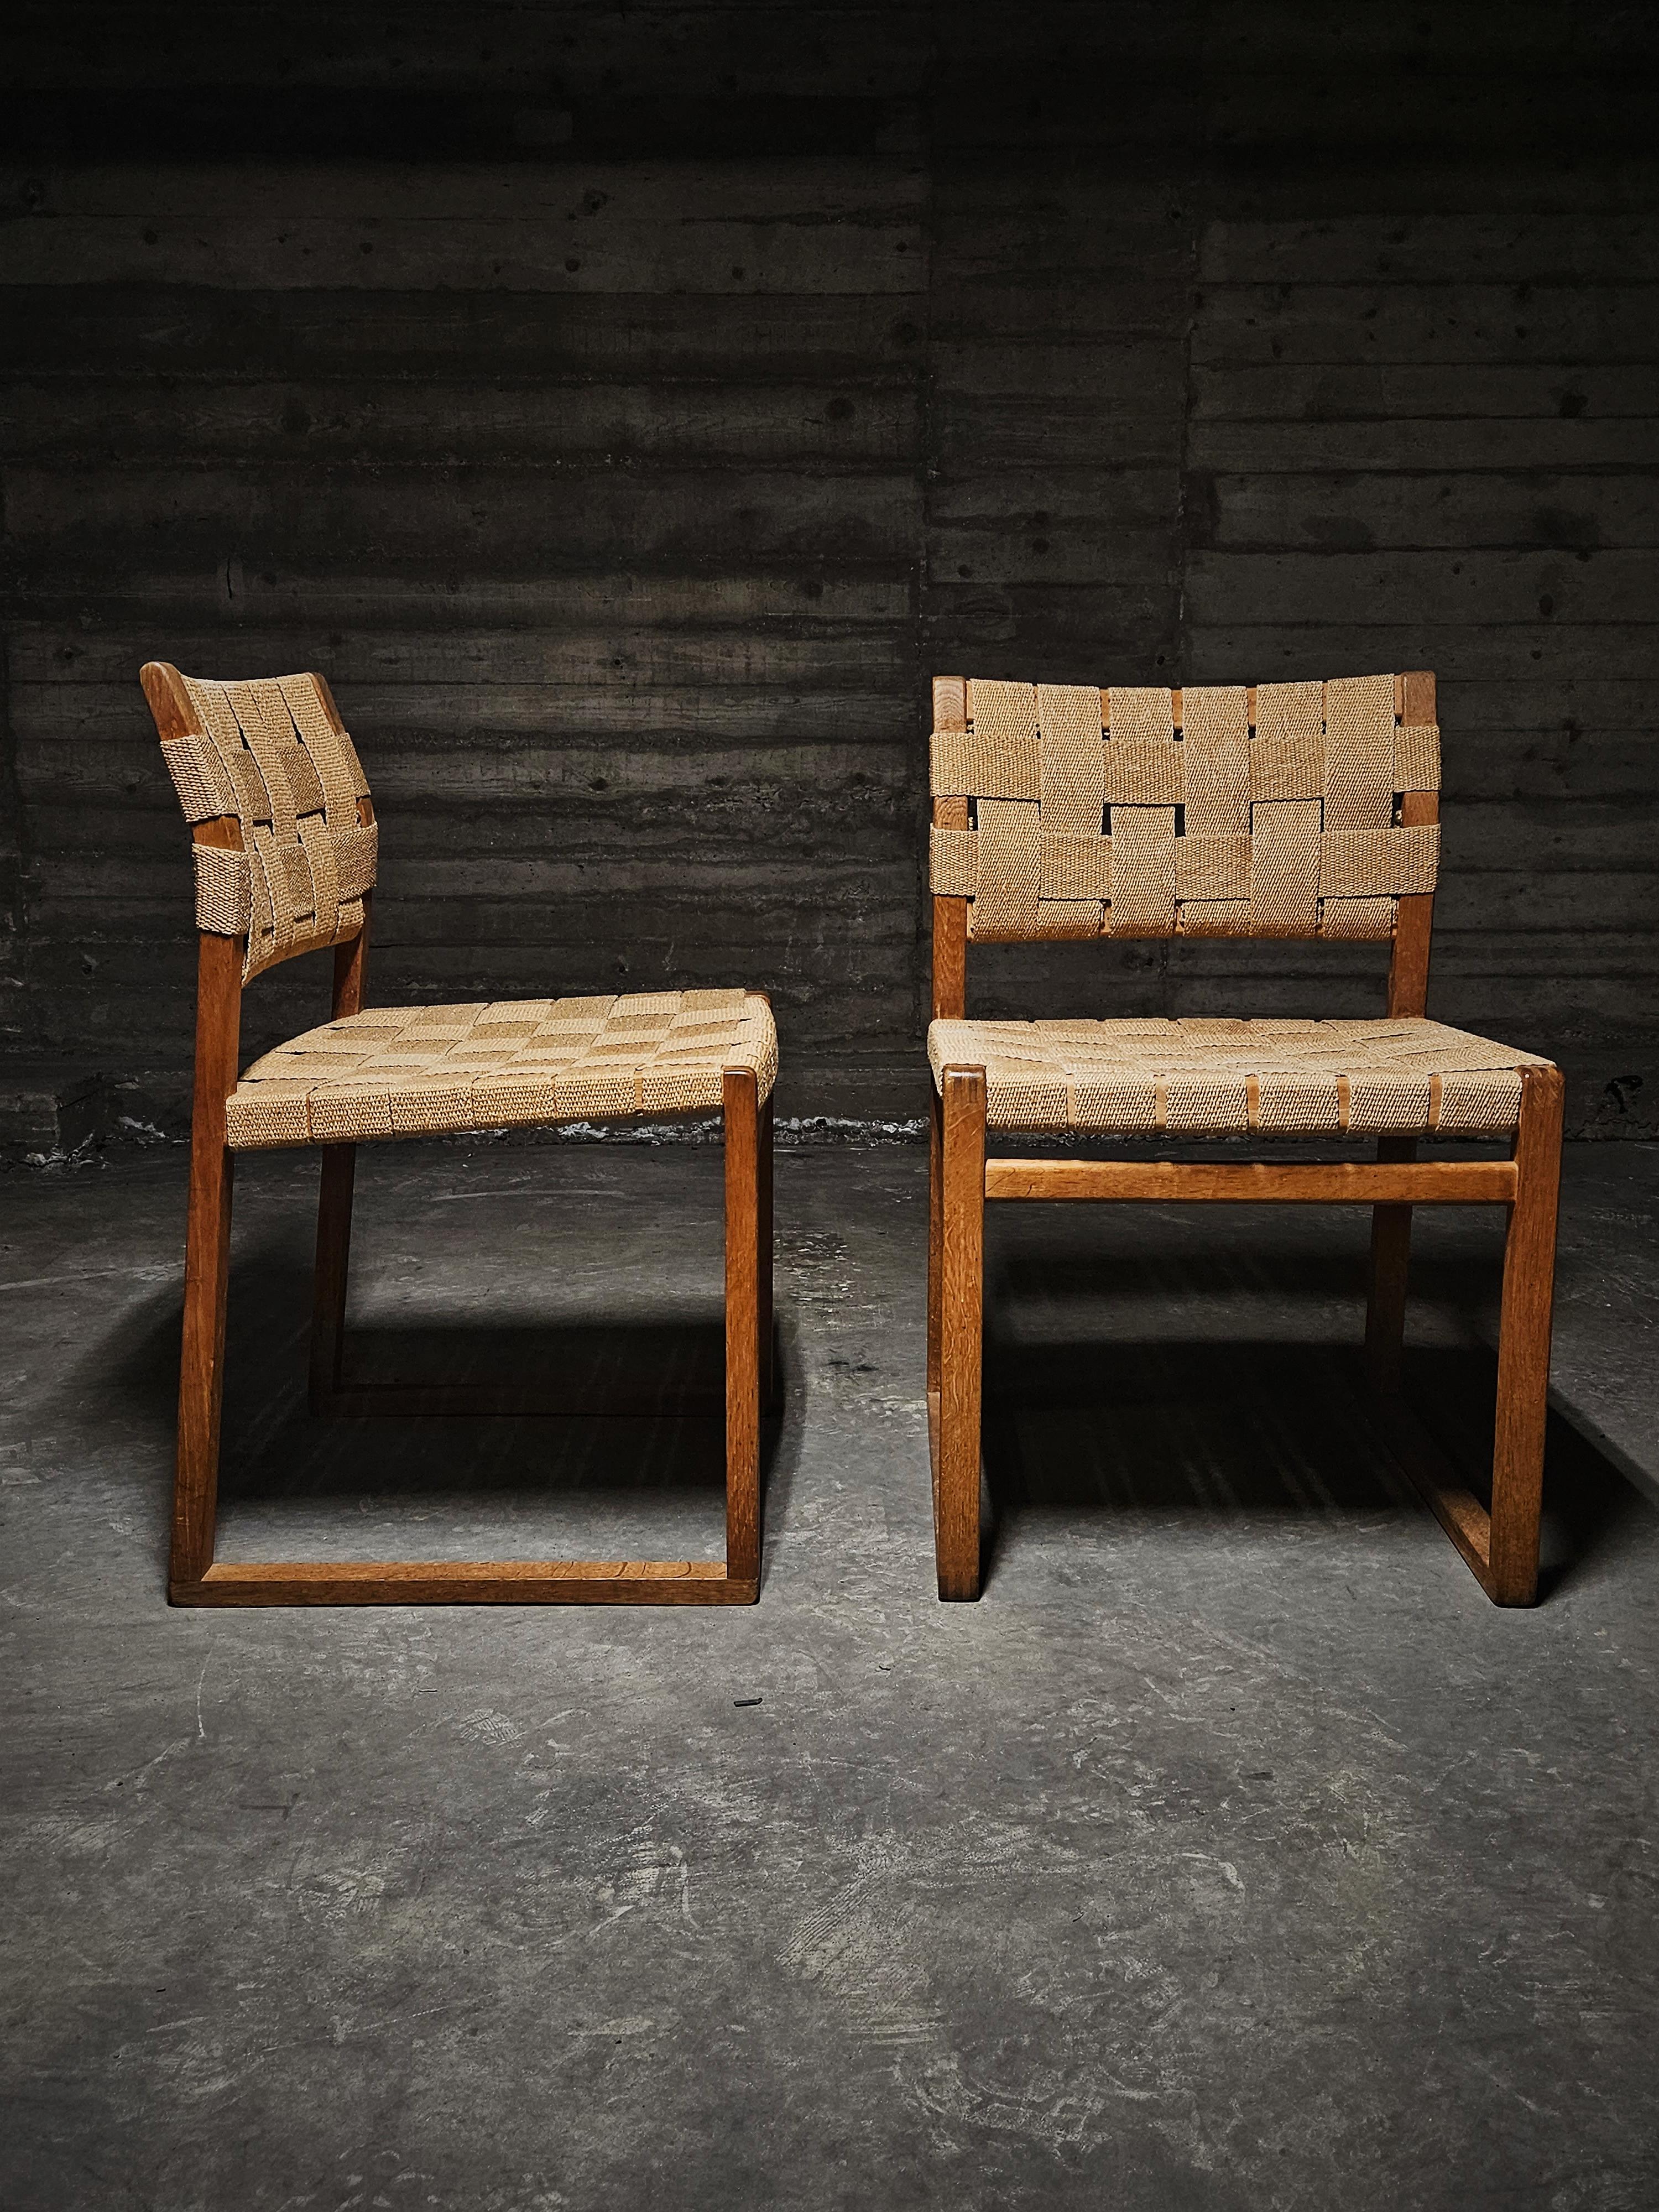 Børge Mogensen pour Fredericia, chaises de salle à manger modèle 'BM 61', chêne, Danemark, années 1950

Cette chaise à l'allure naturaliste se caractérise par un splendide design aux formes simples et aux matériaux authentiques. Le cadre est composé